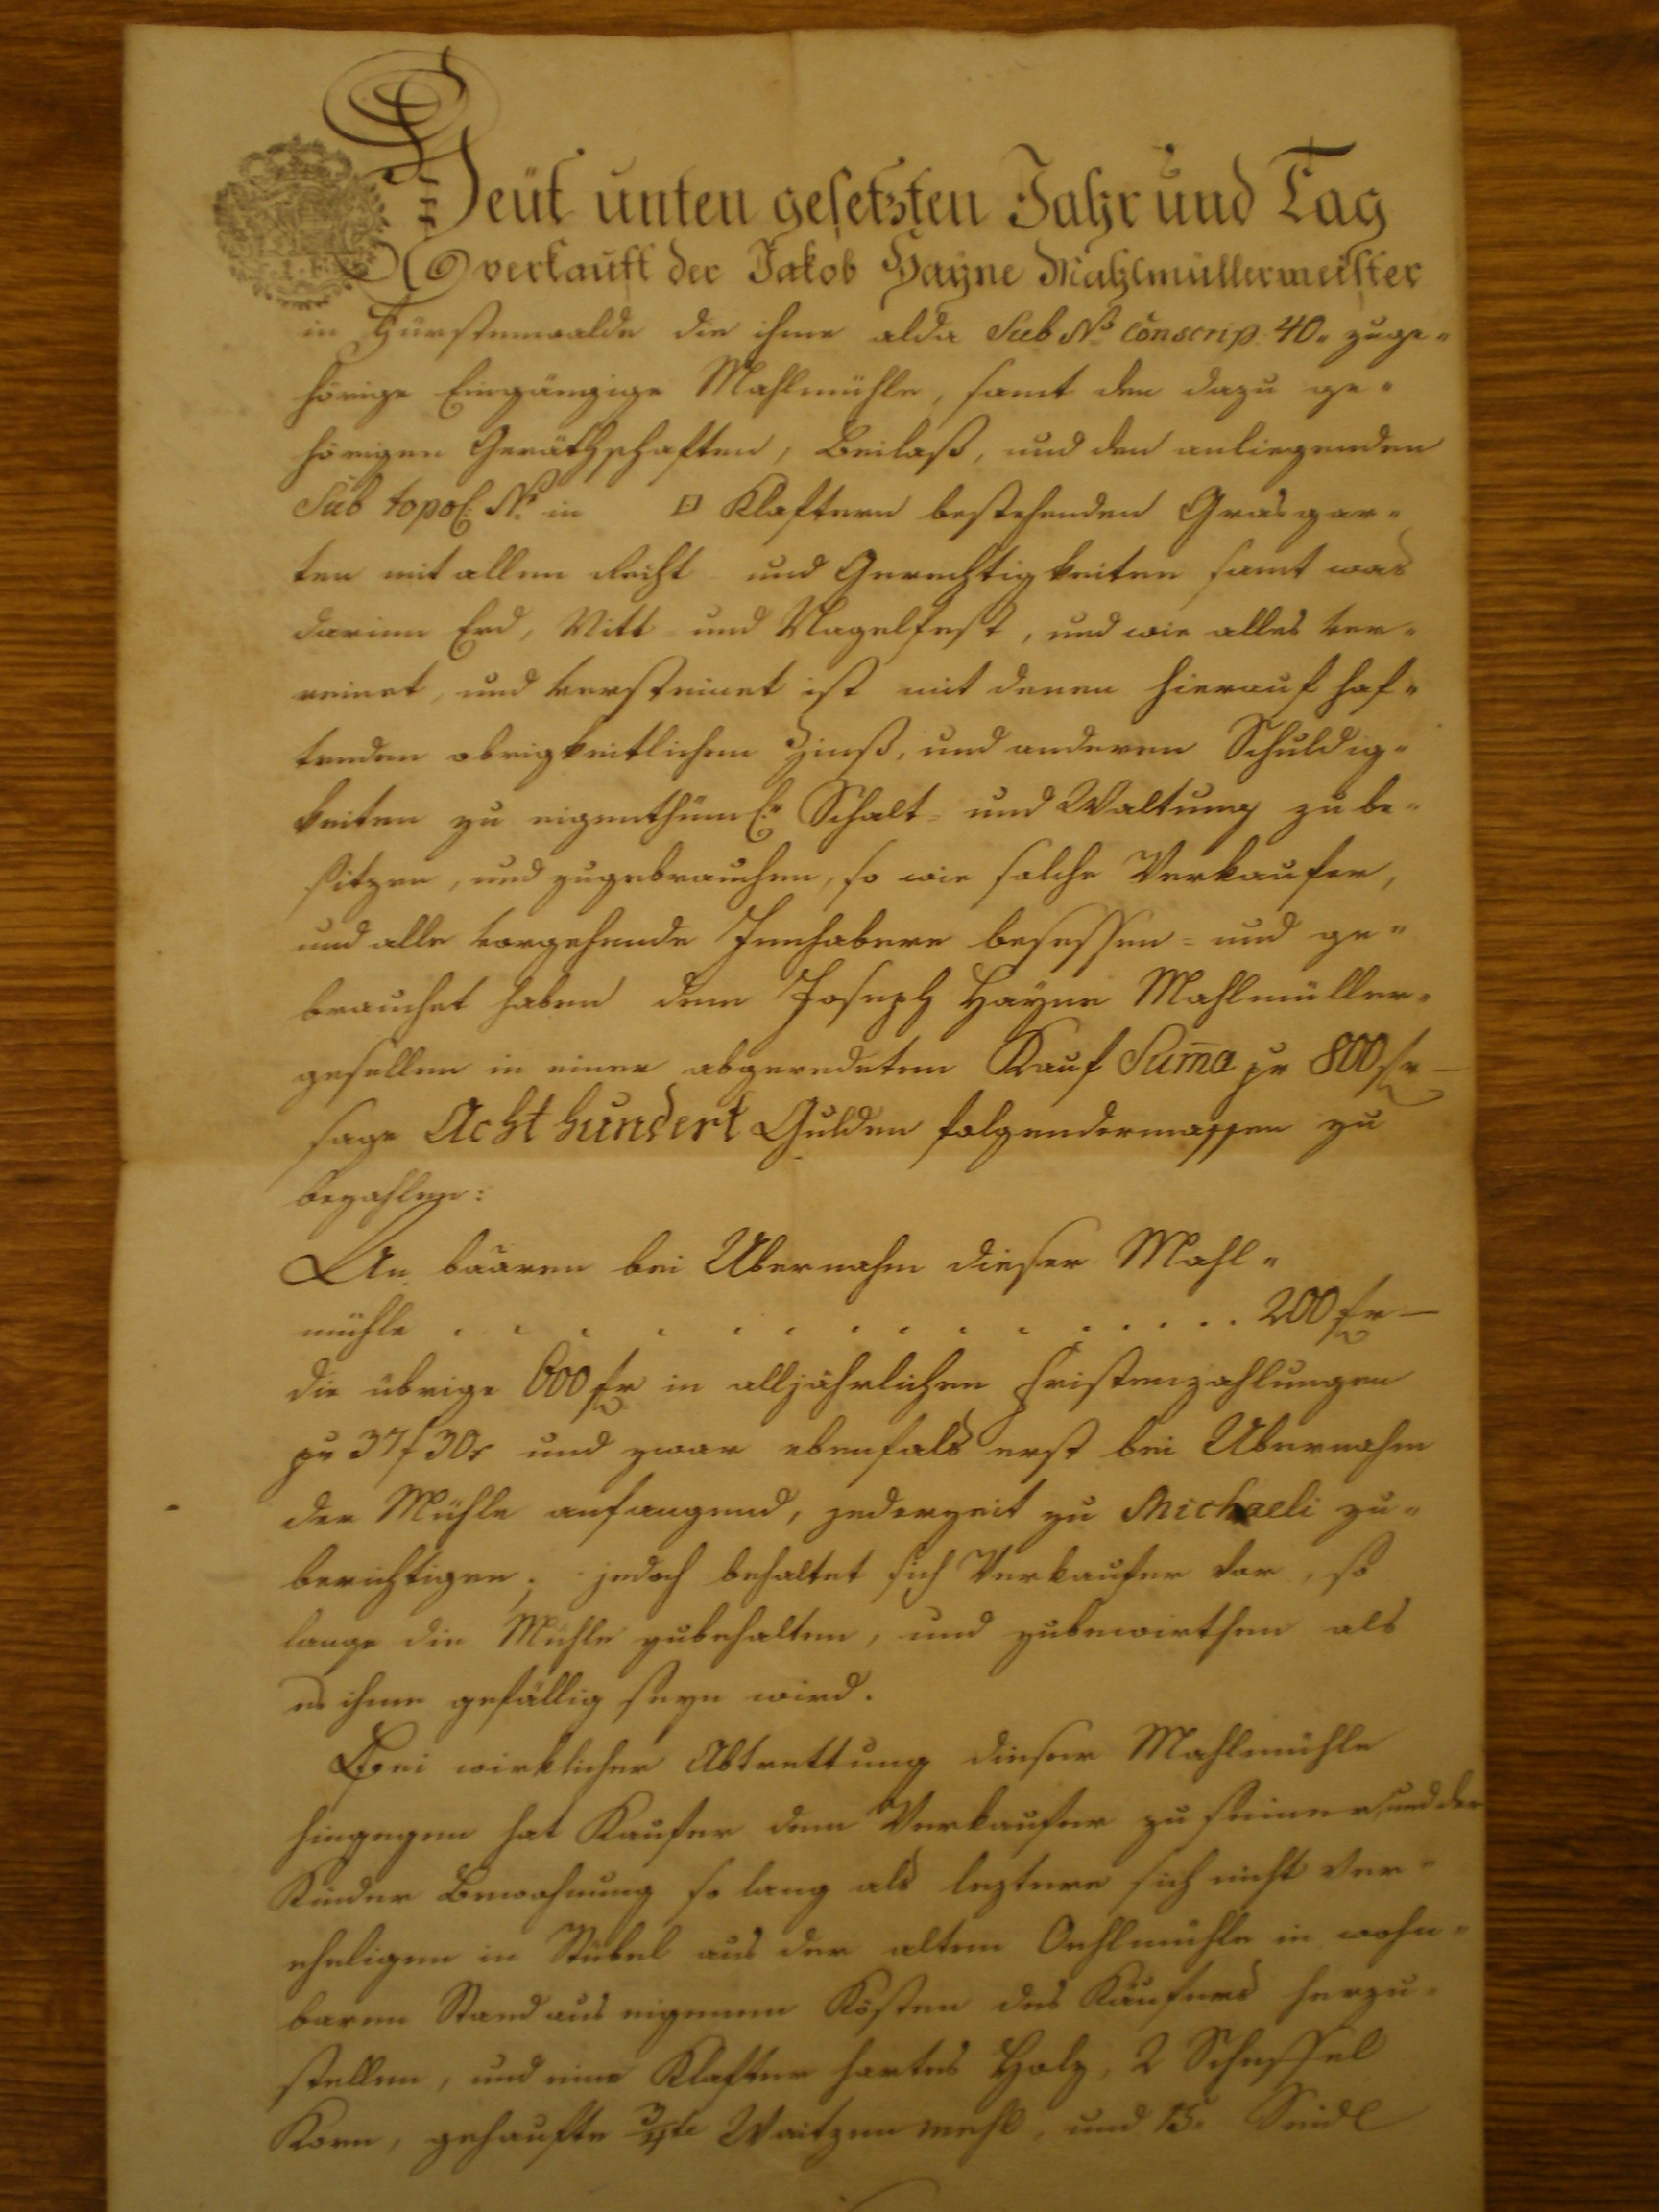 smlouva o prodeji mlýna z otce Jacoba Heyna na syna Josefa Heyne za 800 guldenů